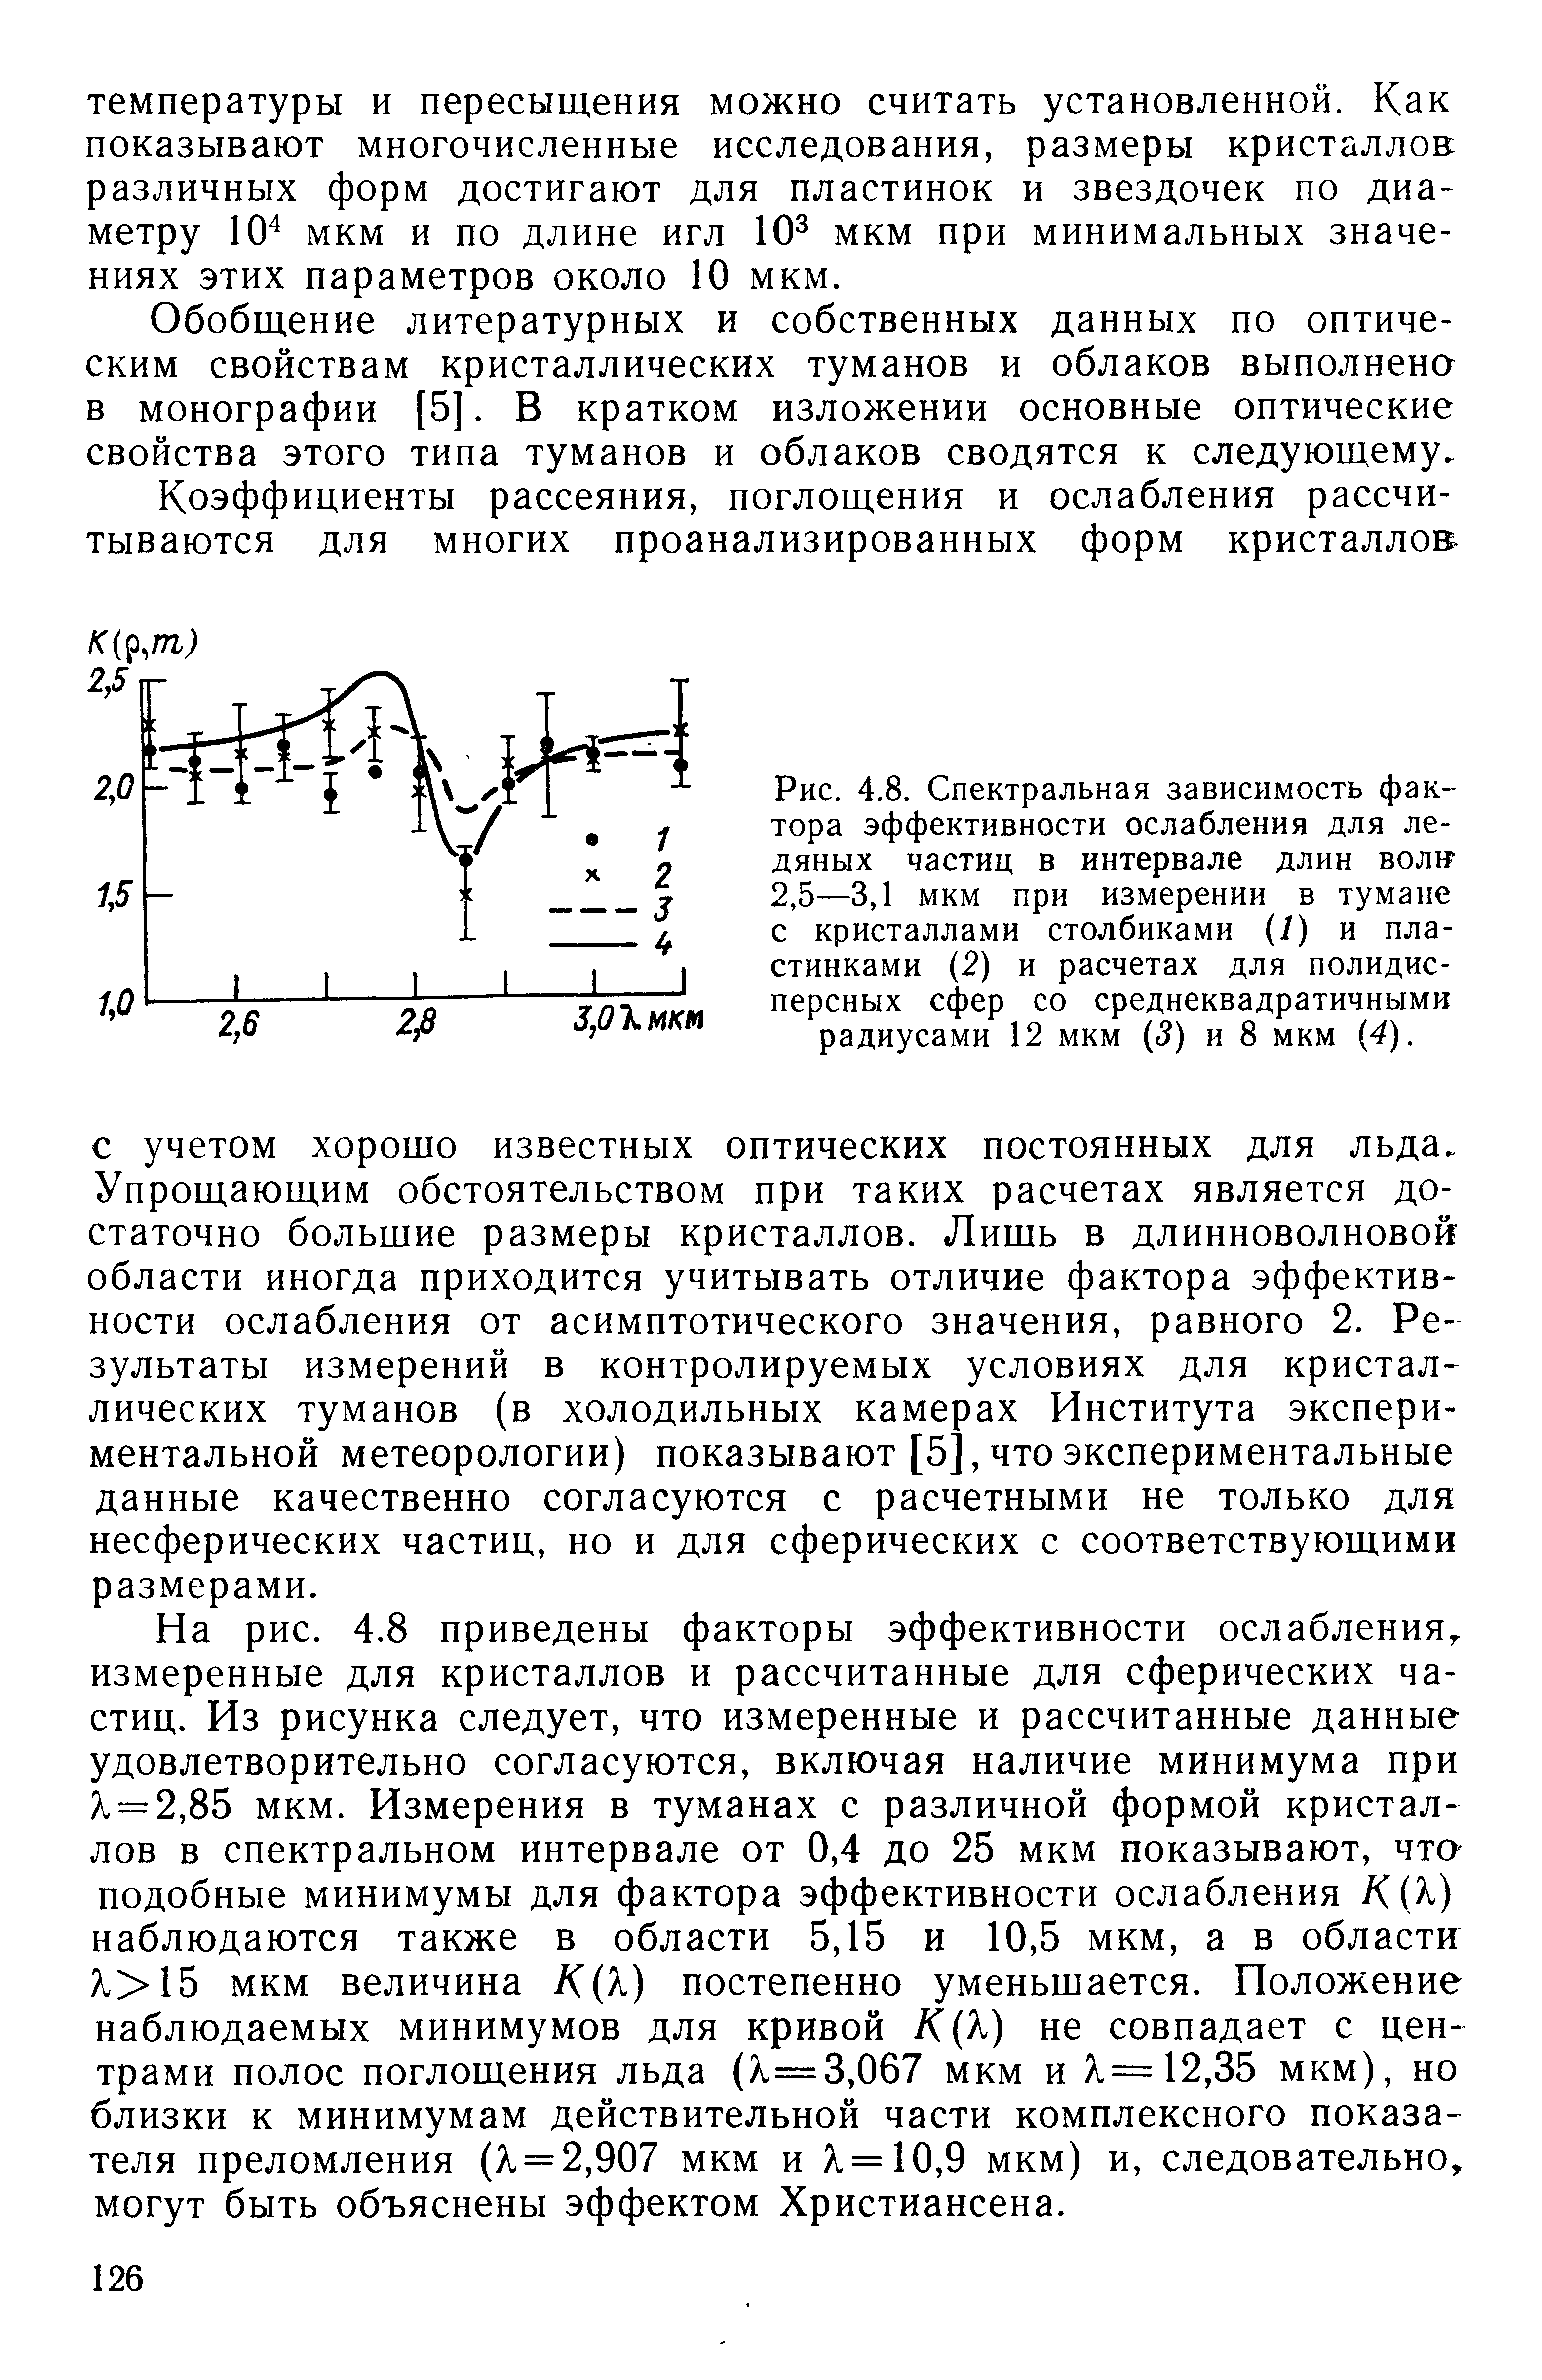 Рис. 4.8. Спектральная зависимость фактора эффективности ослабления для ледяных частиц в интервале длин вол1 2,5—3,1 мкм при измерении в тумане с кристаллами столбиками (/) и пластинками (2) и расчетах для полидисперсных сфер со среднеквадратичными радиусами 12 мкм ( 5) и 8 мкм (4).
